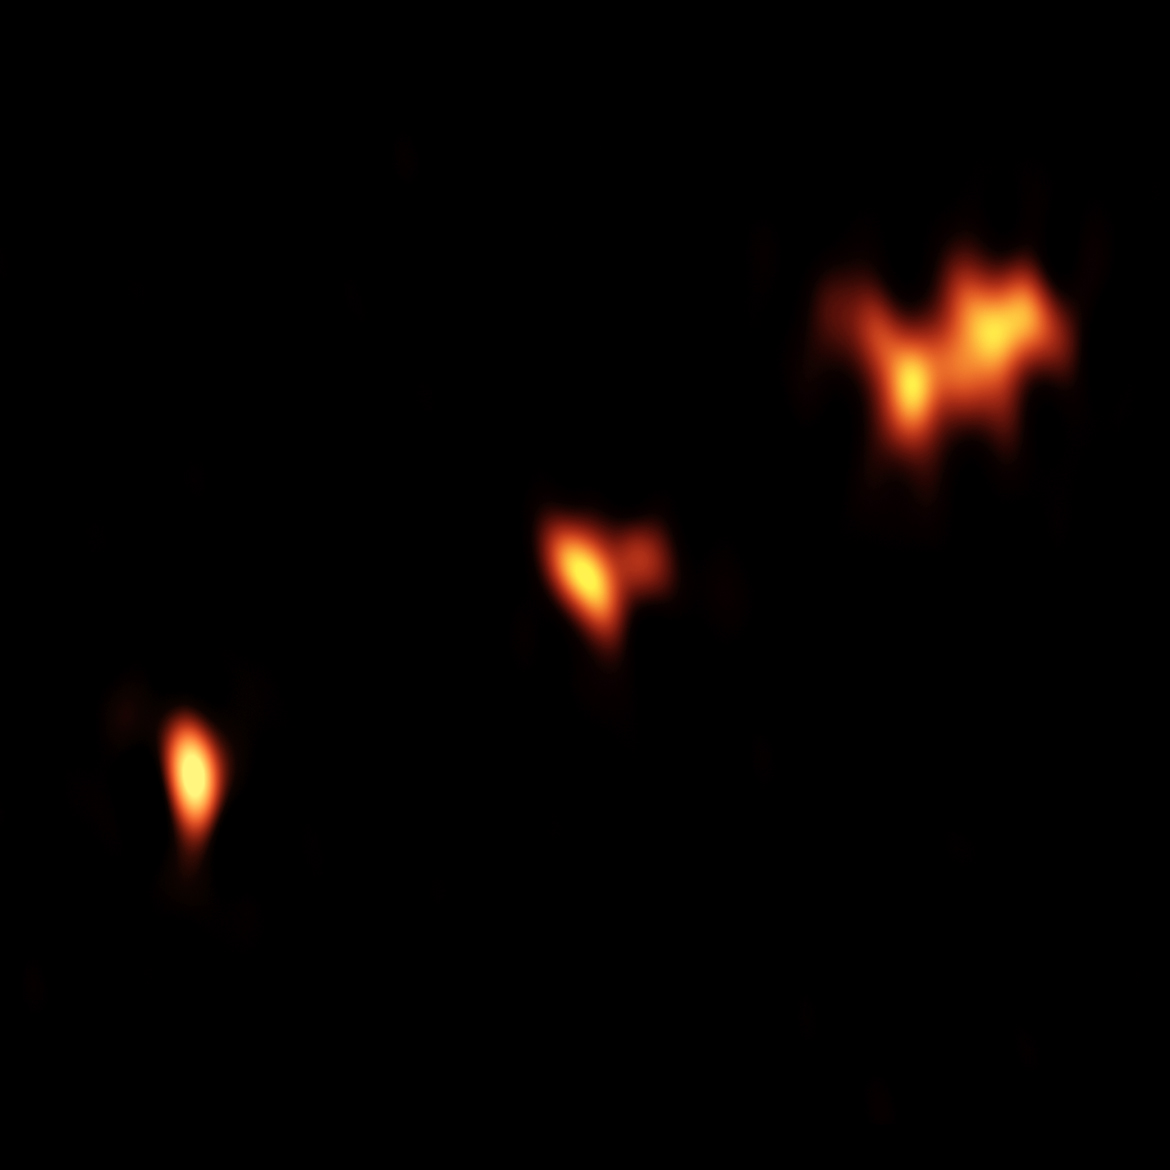 VLBA continuum image of QSO P352–15